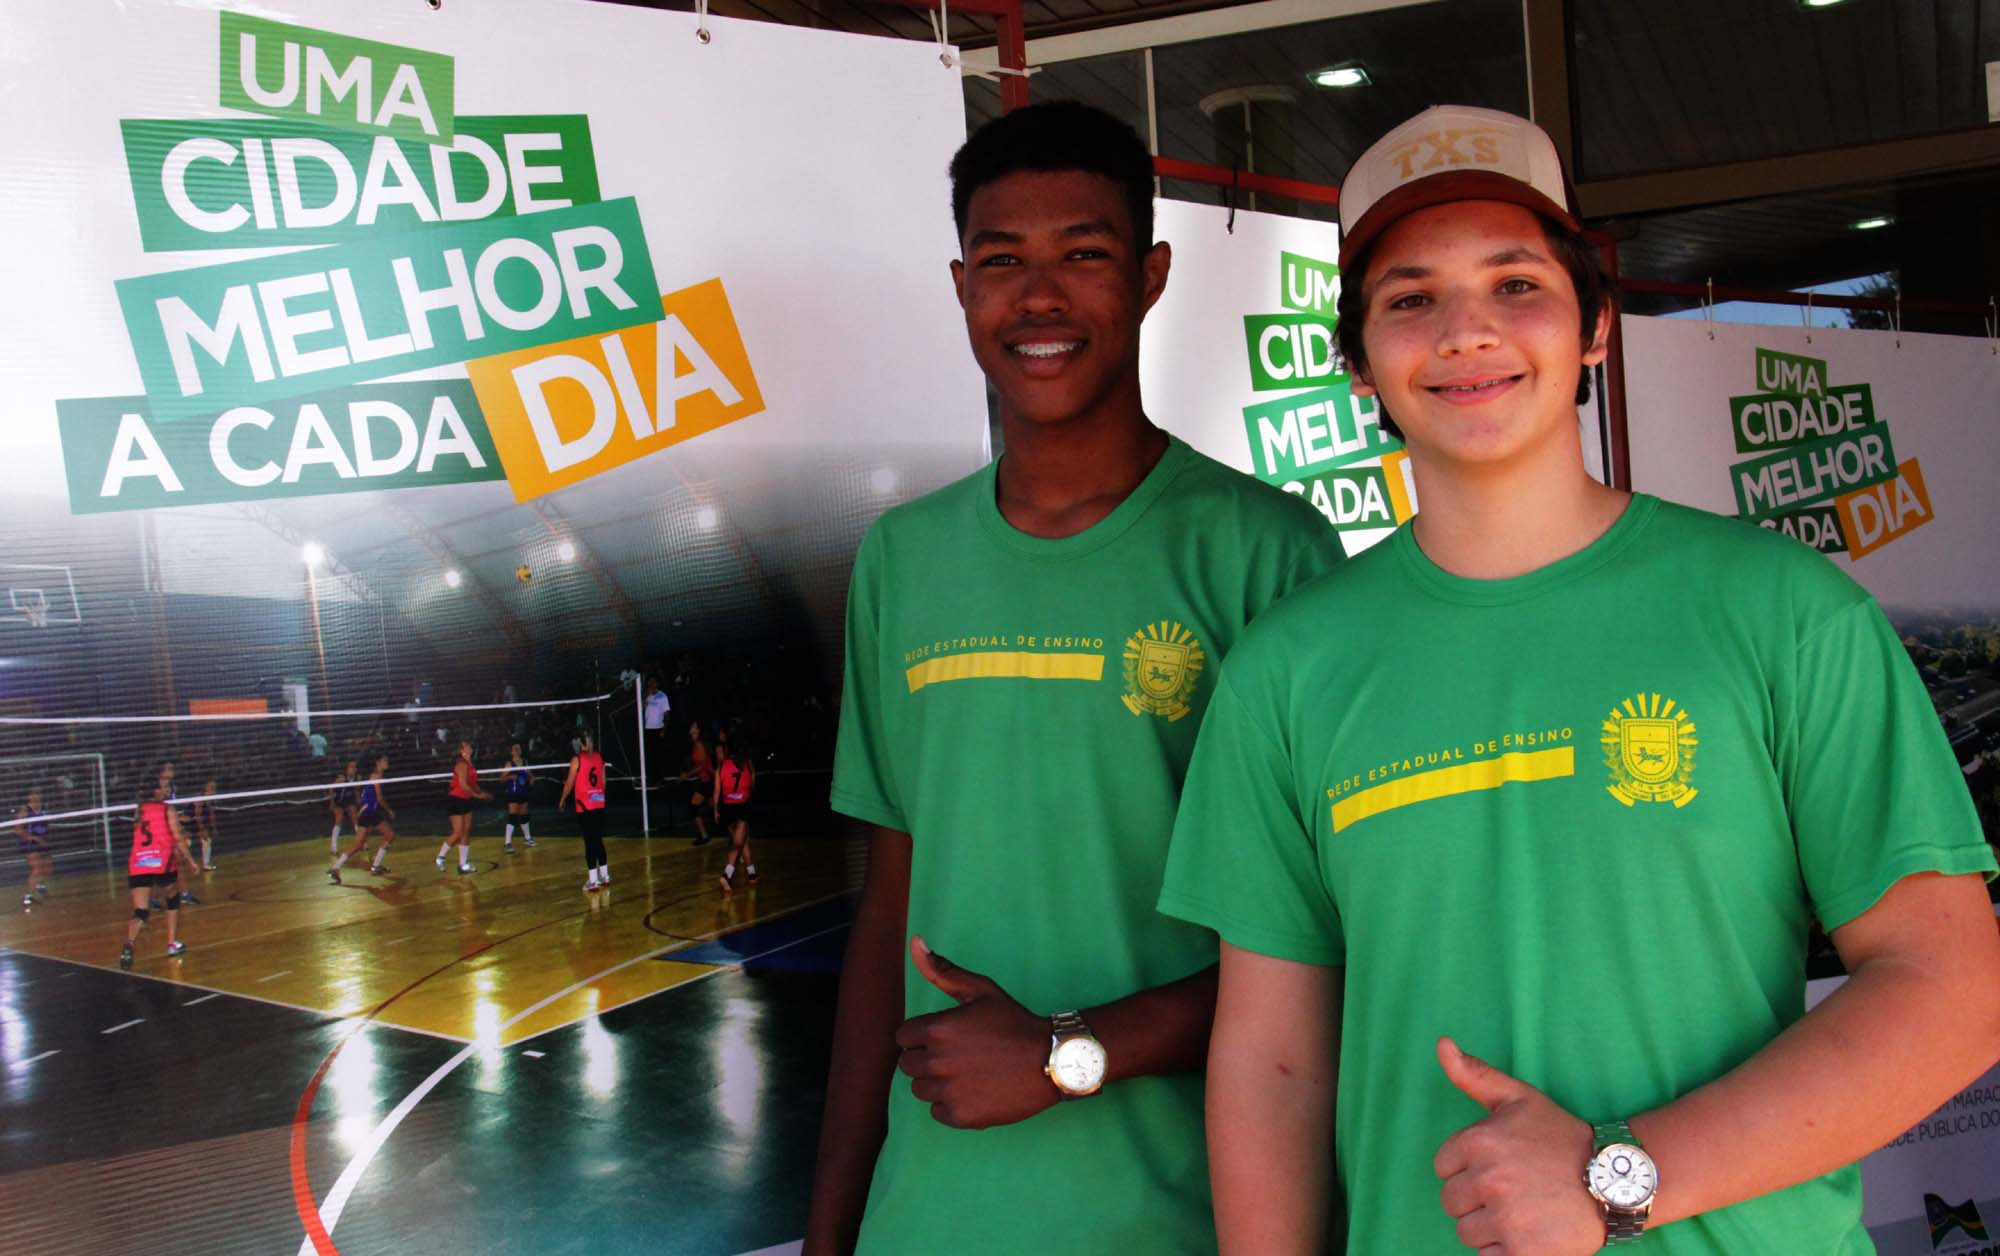 Alunos do 2° ano do ensino médio, Vitor e Mayco festejaram o anúncio da reforma.